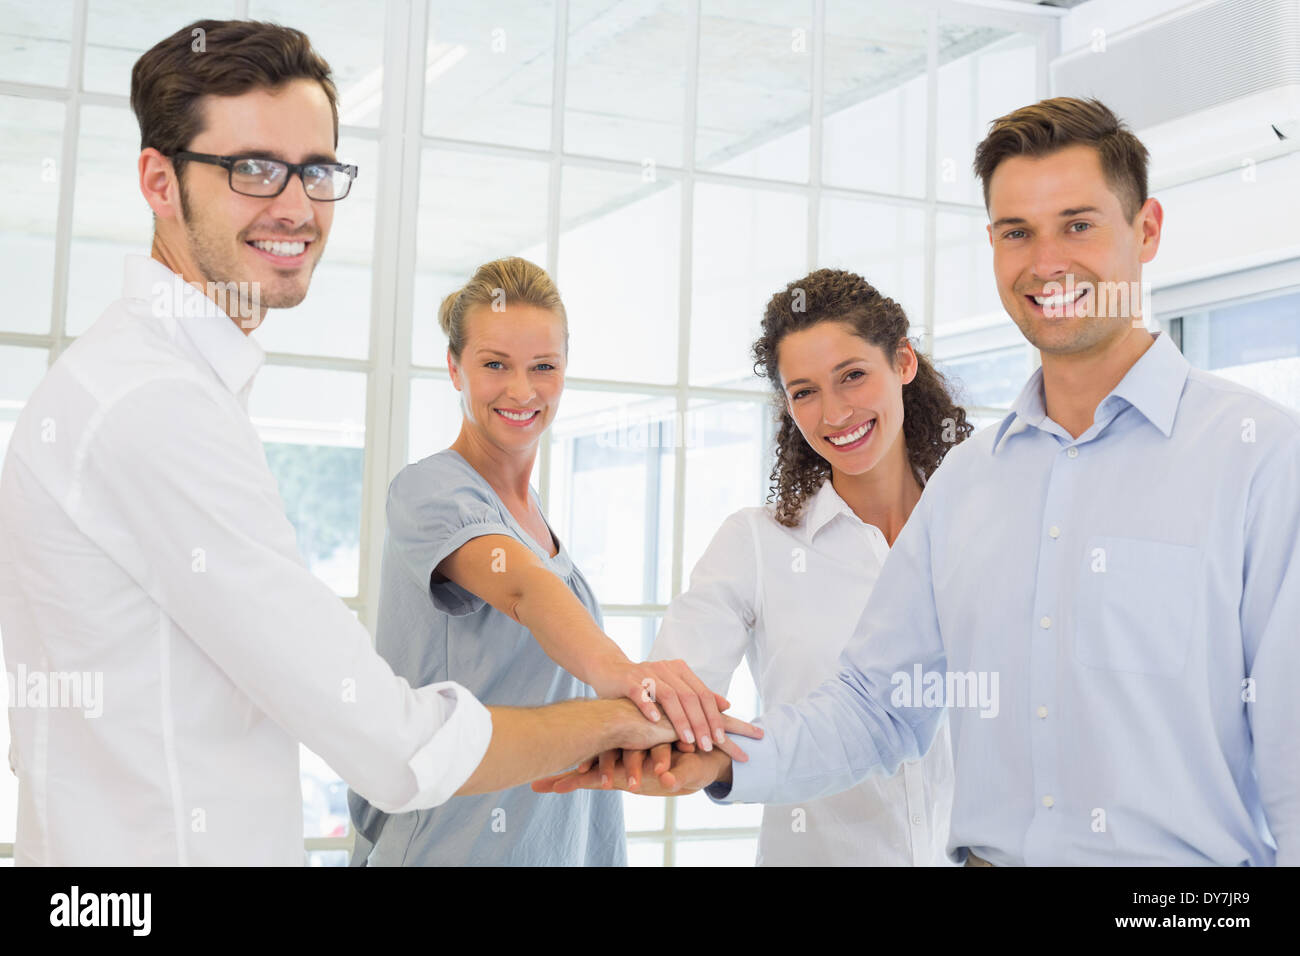 Lässig lächelnd Business-Team setzen ihre Hände zusammen Stockfoto